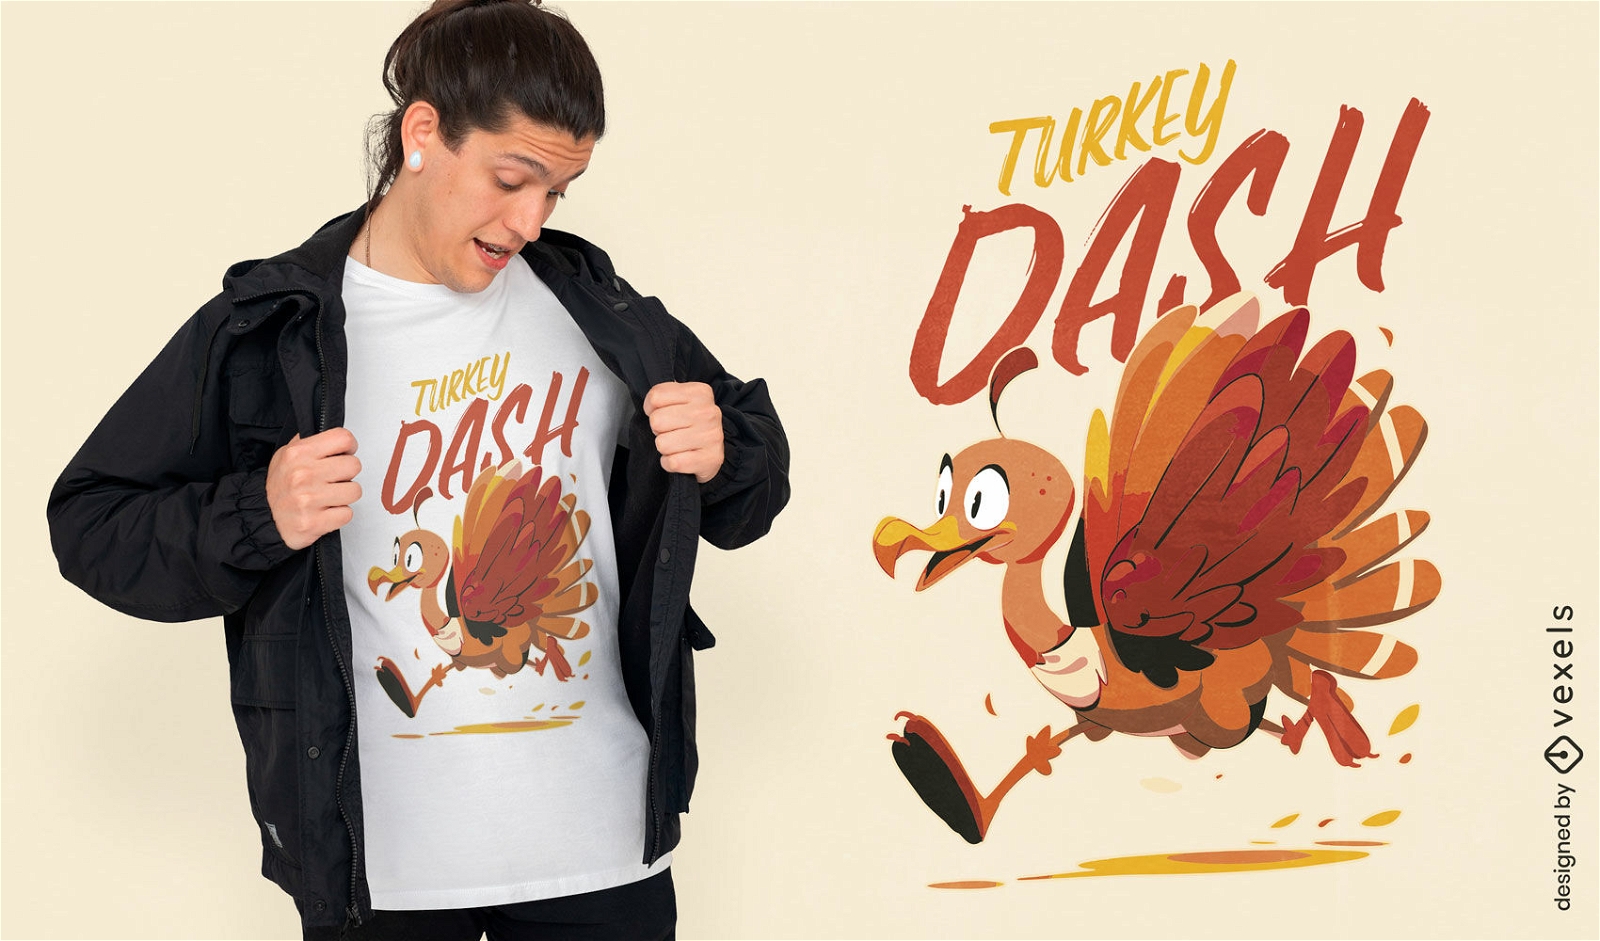 Diseño de camiseta de acción de gracias de Turkey dash